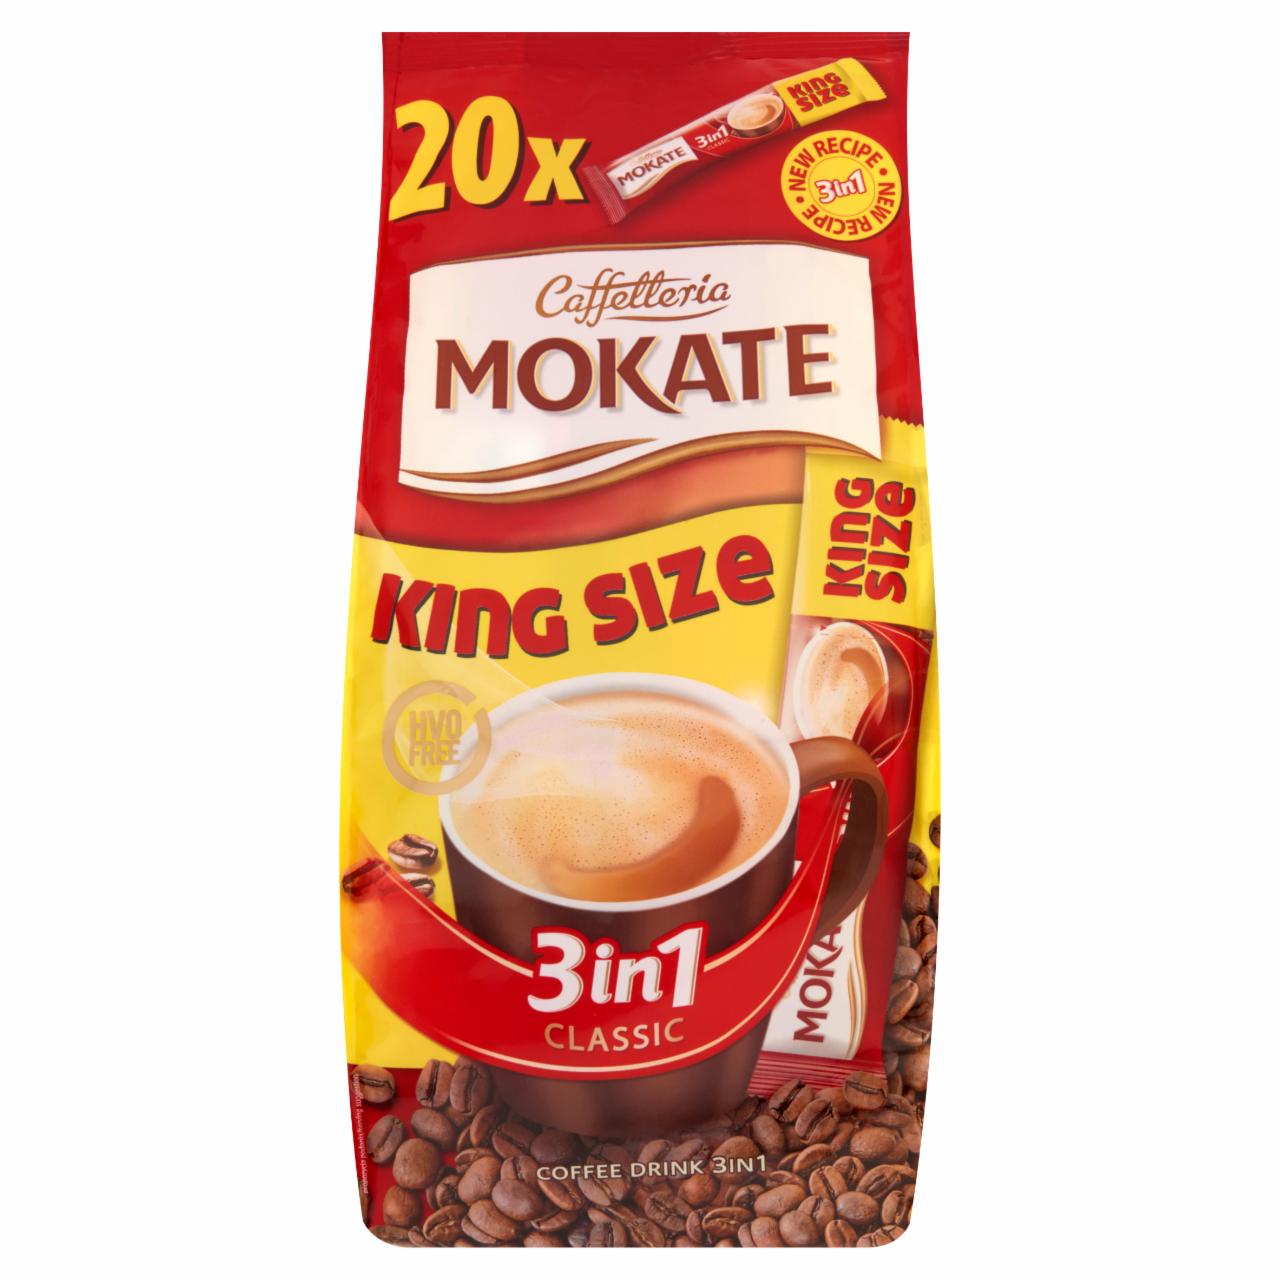 Képek - Mokate 3 in 1 King Size azonnal oldódó kávéspecialitás 20 x 21 g